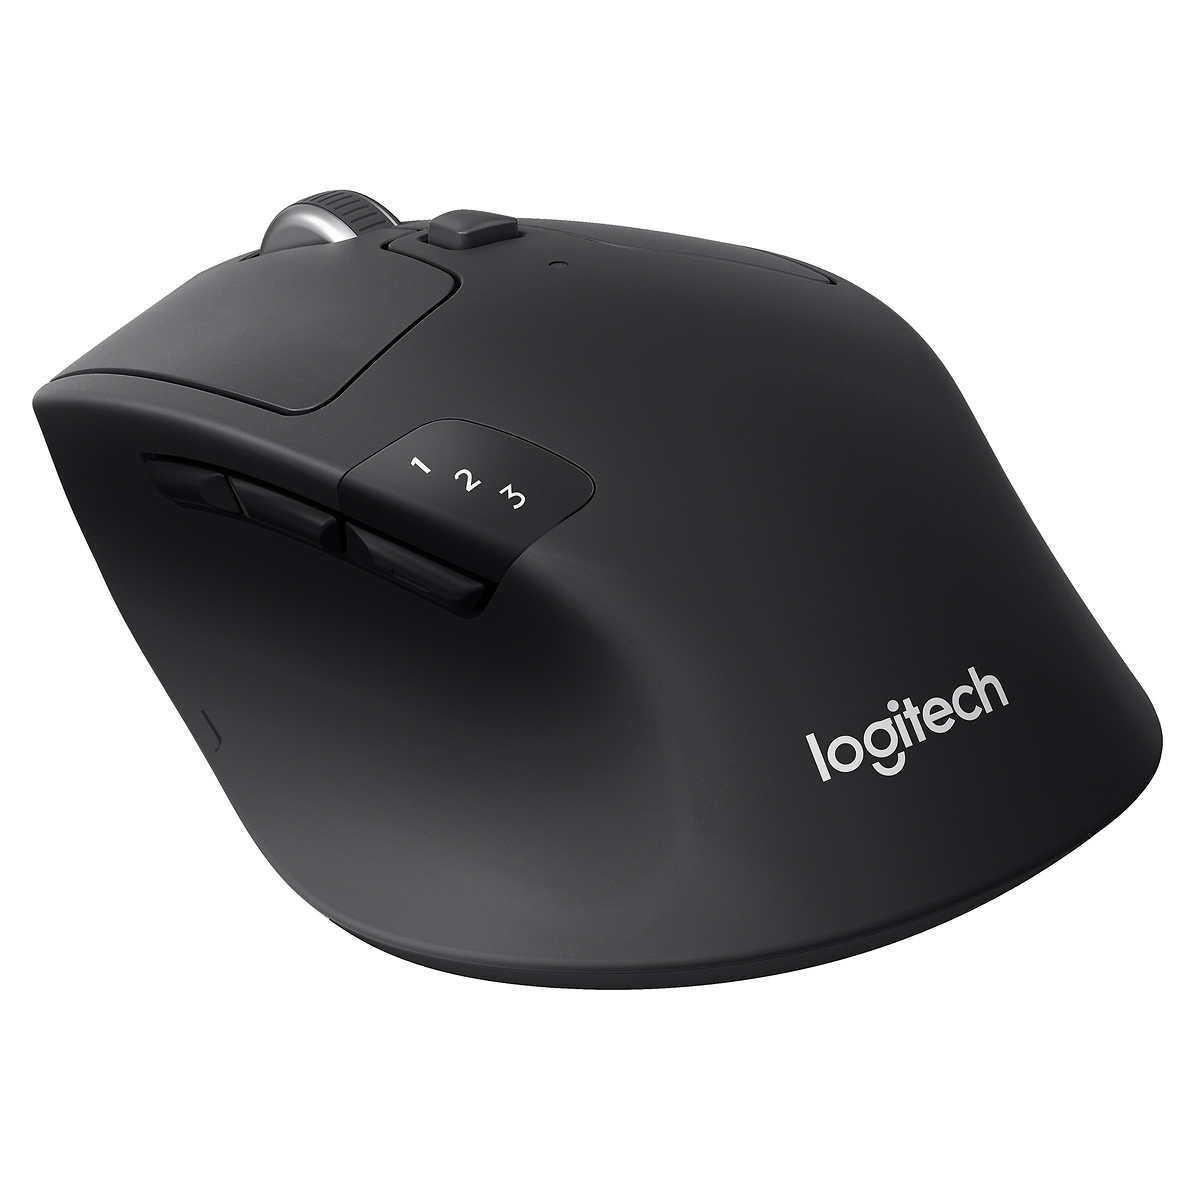 Logitech Precision Pro Wireless Mouse Costco